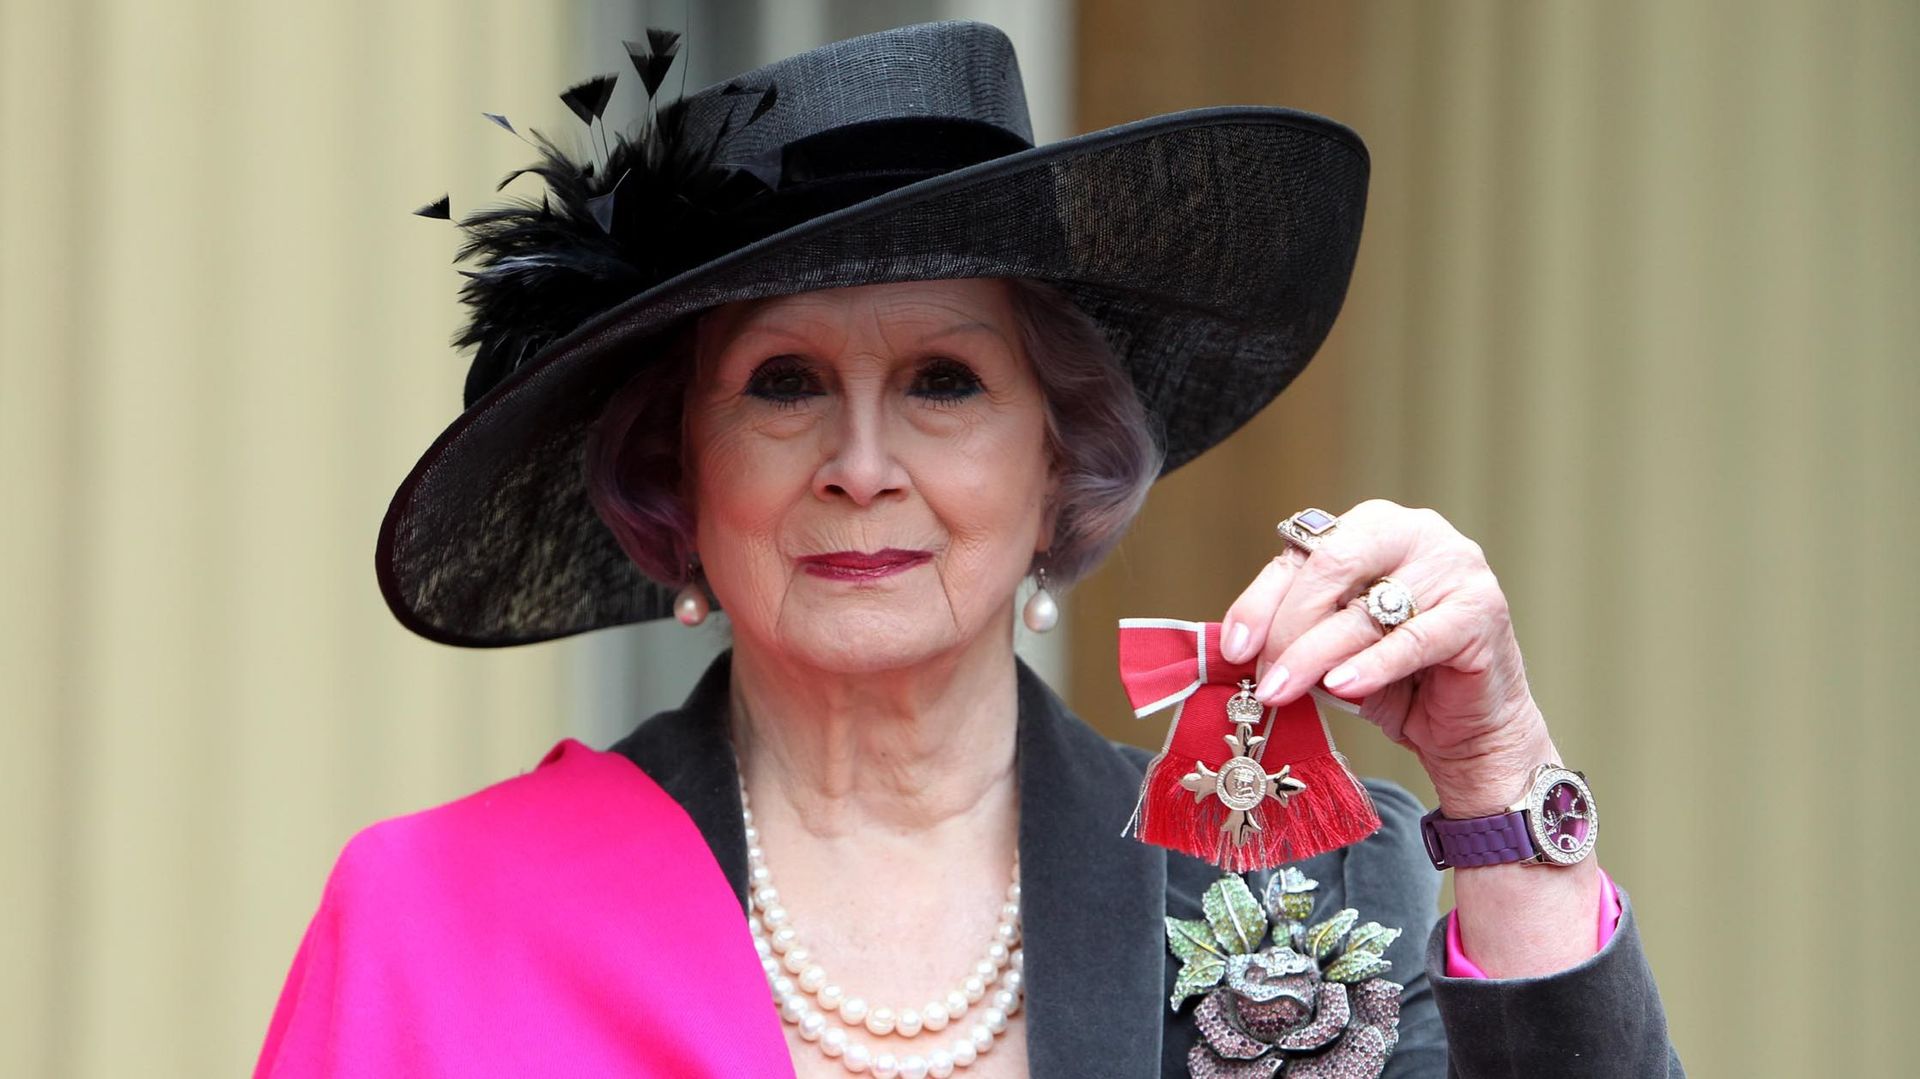 April Ashley tient sa médaille de membre de l'Empire britannique (MBE) qui lui a été remise par la reine Elizabeth II lors d'une cérémonie d'investiture au palais de Buckingham le 13 décembre 2012 à Londres, en Angleterre.